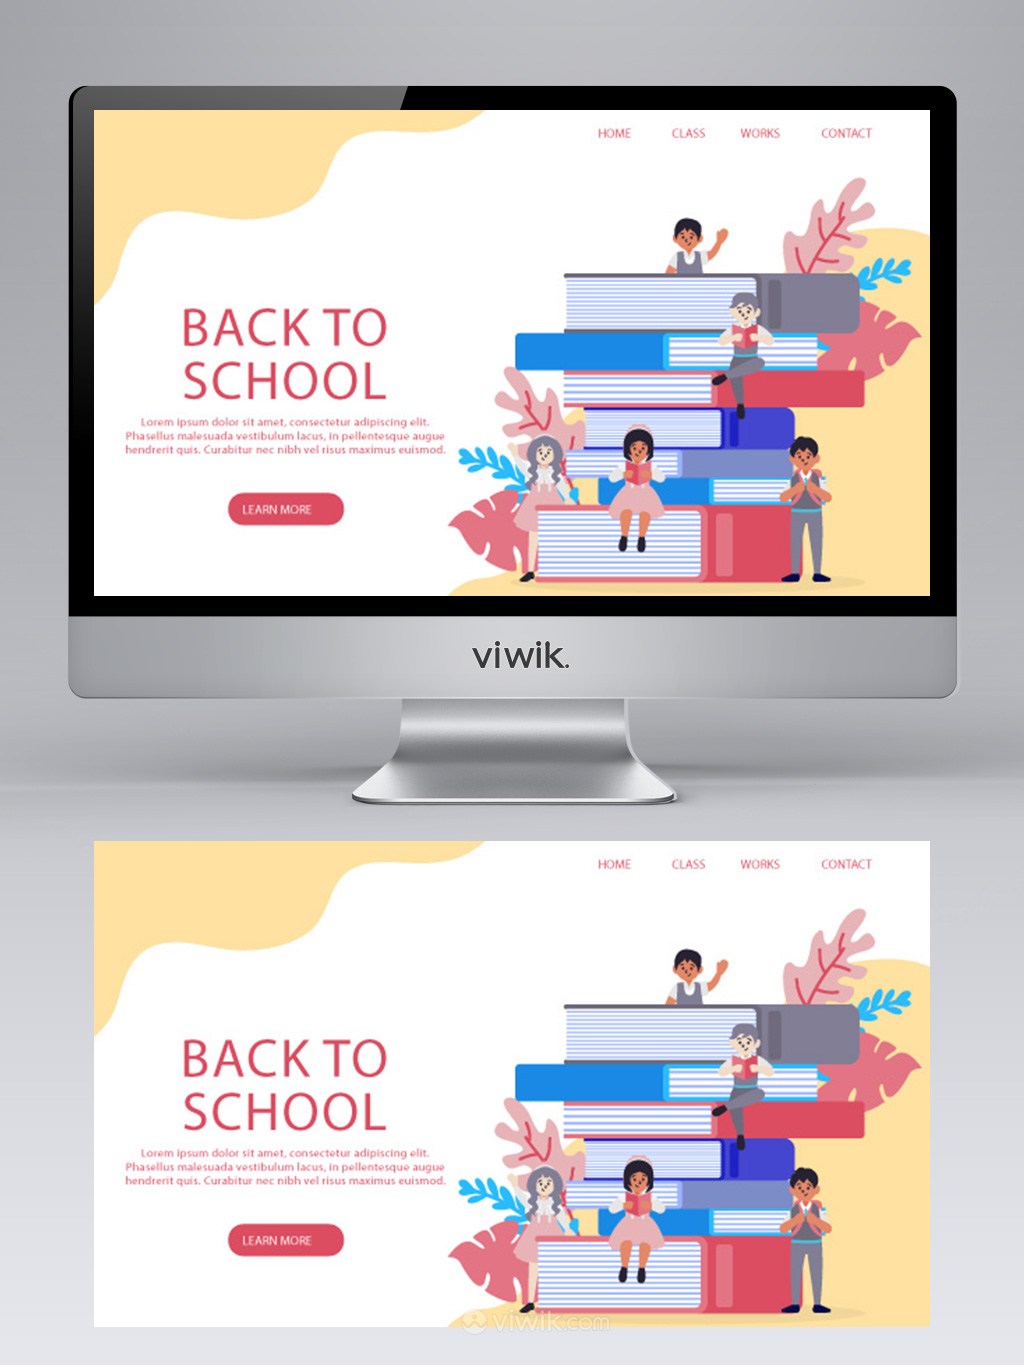 学生书籍插画儿童教育网站banner设计